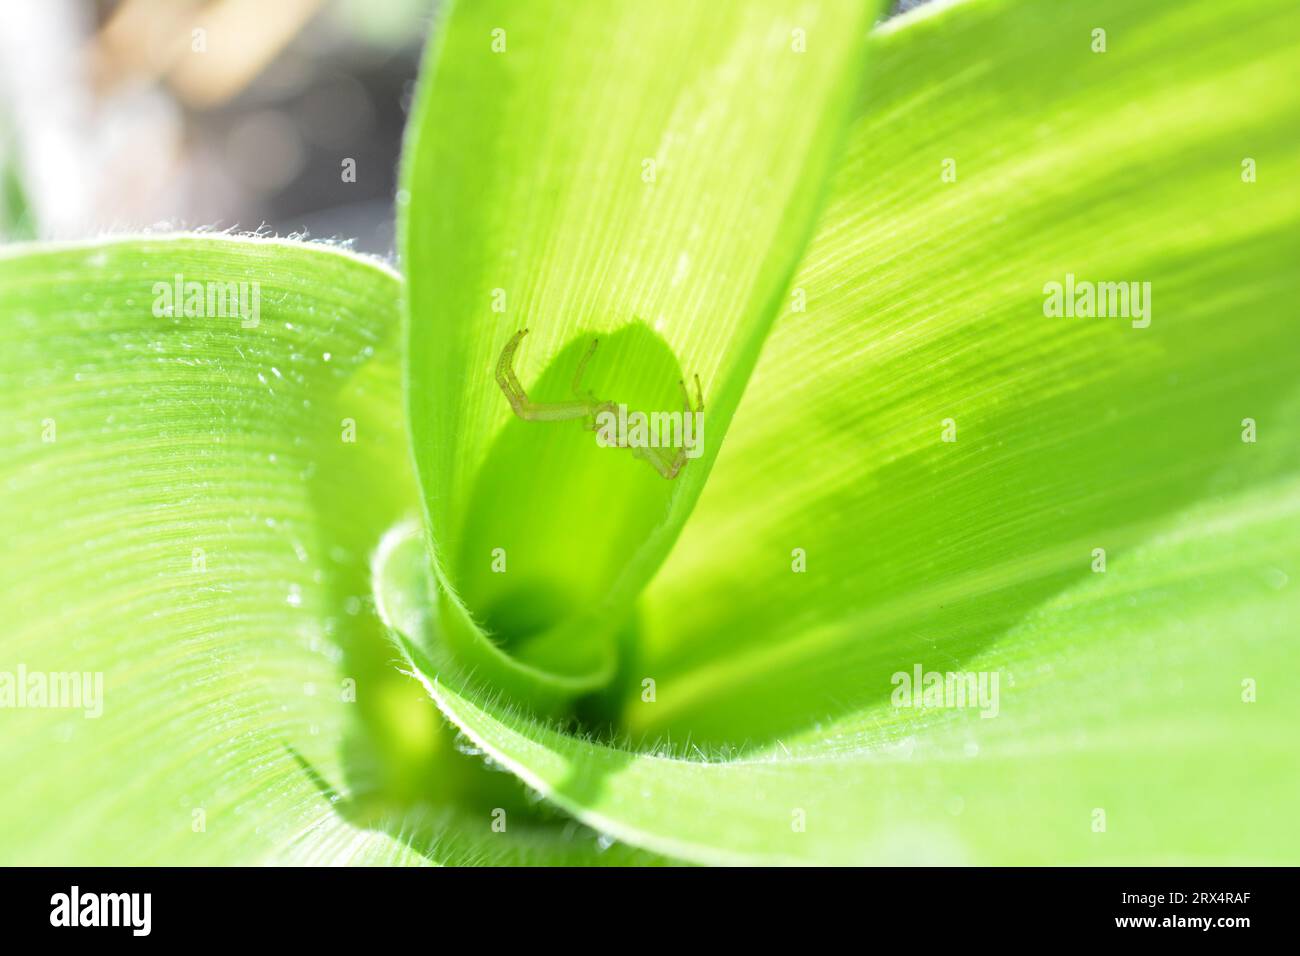 Nascosto con astuzia all'interno della pianta di mais, un piccolo ragno verde attende pazientemente la sua ignara preda. Il predatore segreto della natura. Foto Stock